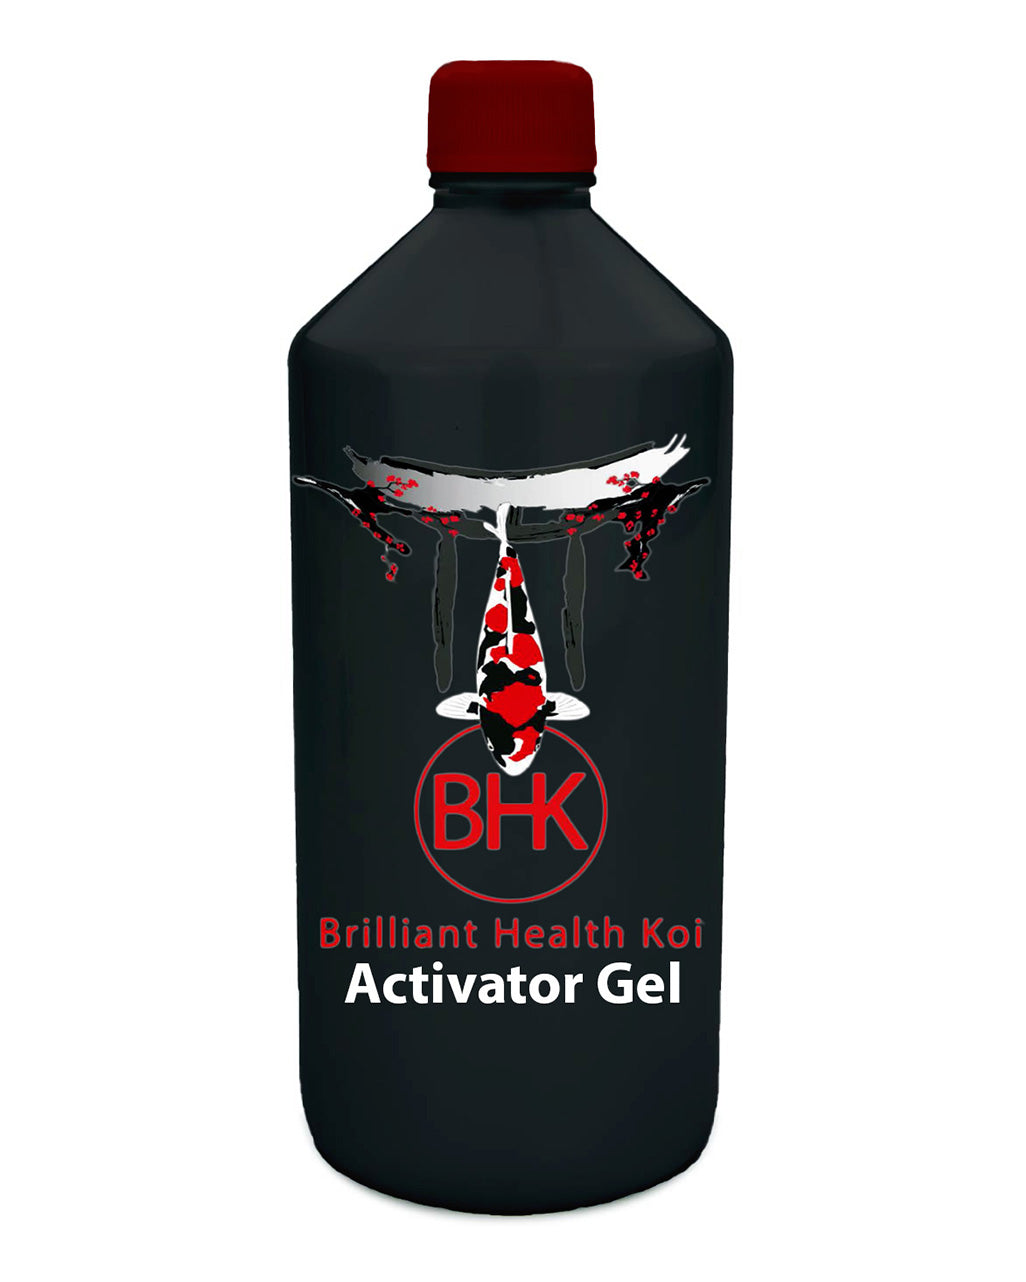 BHK Activator Gel